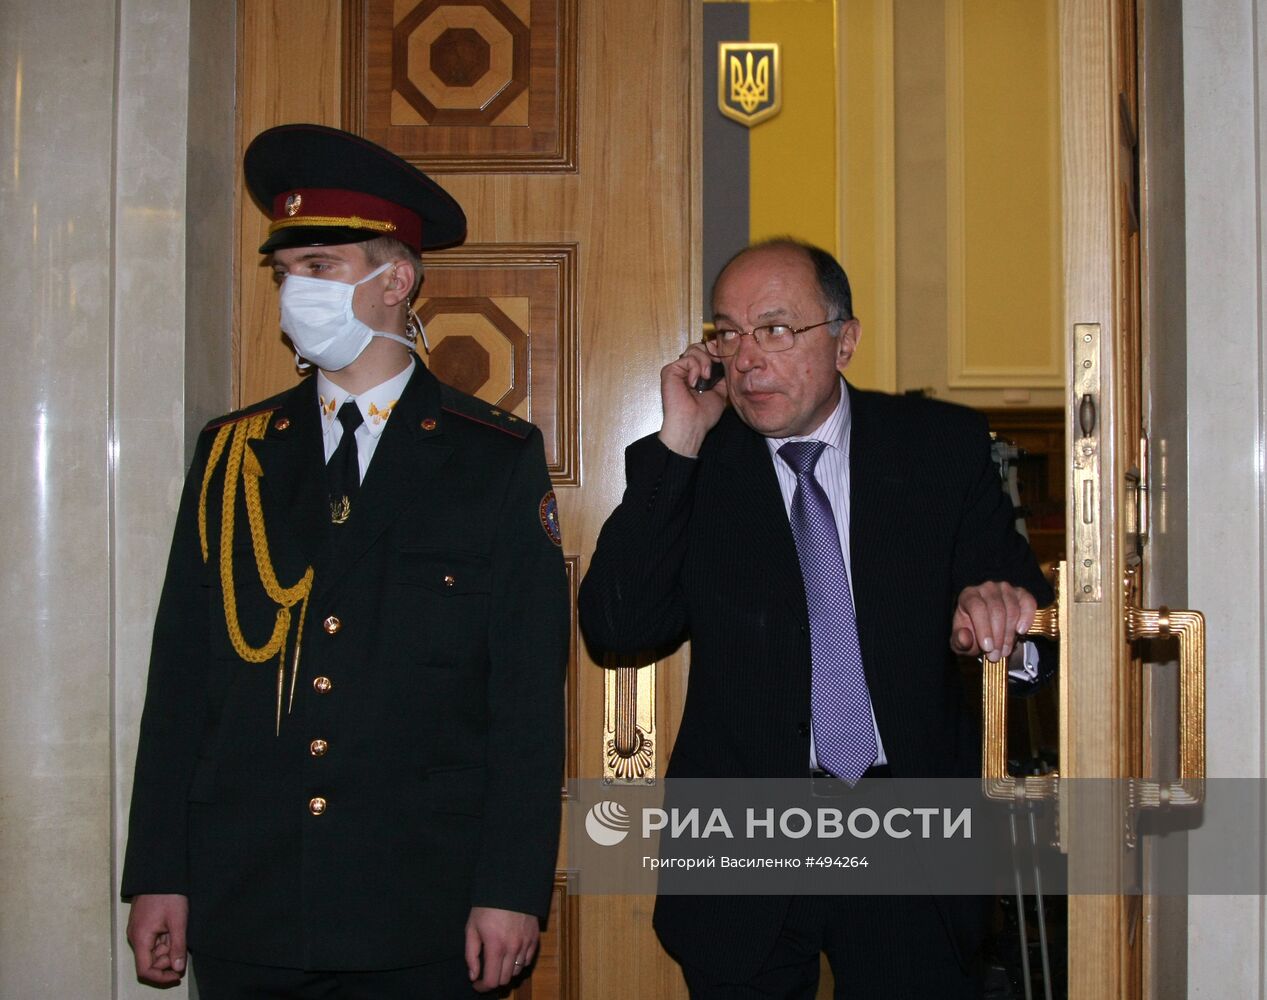 Вход в зал заседаний Верховной Рады Украины